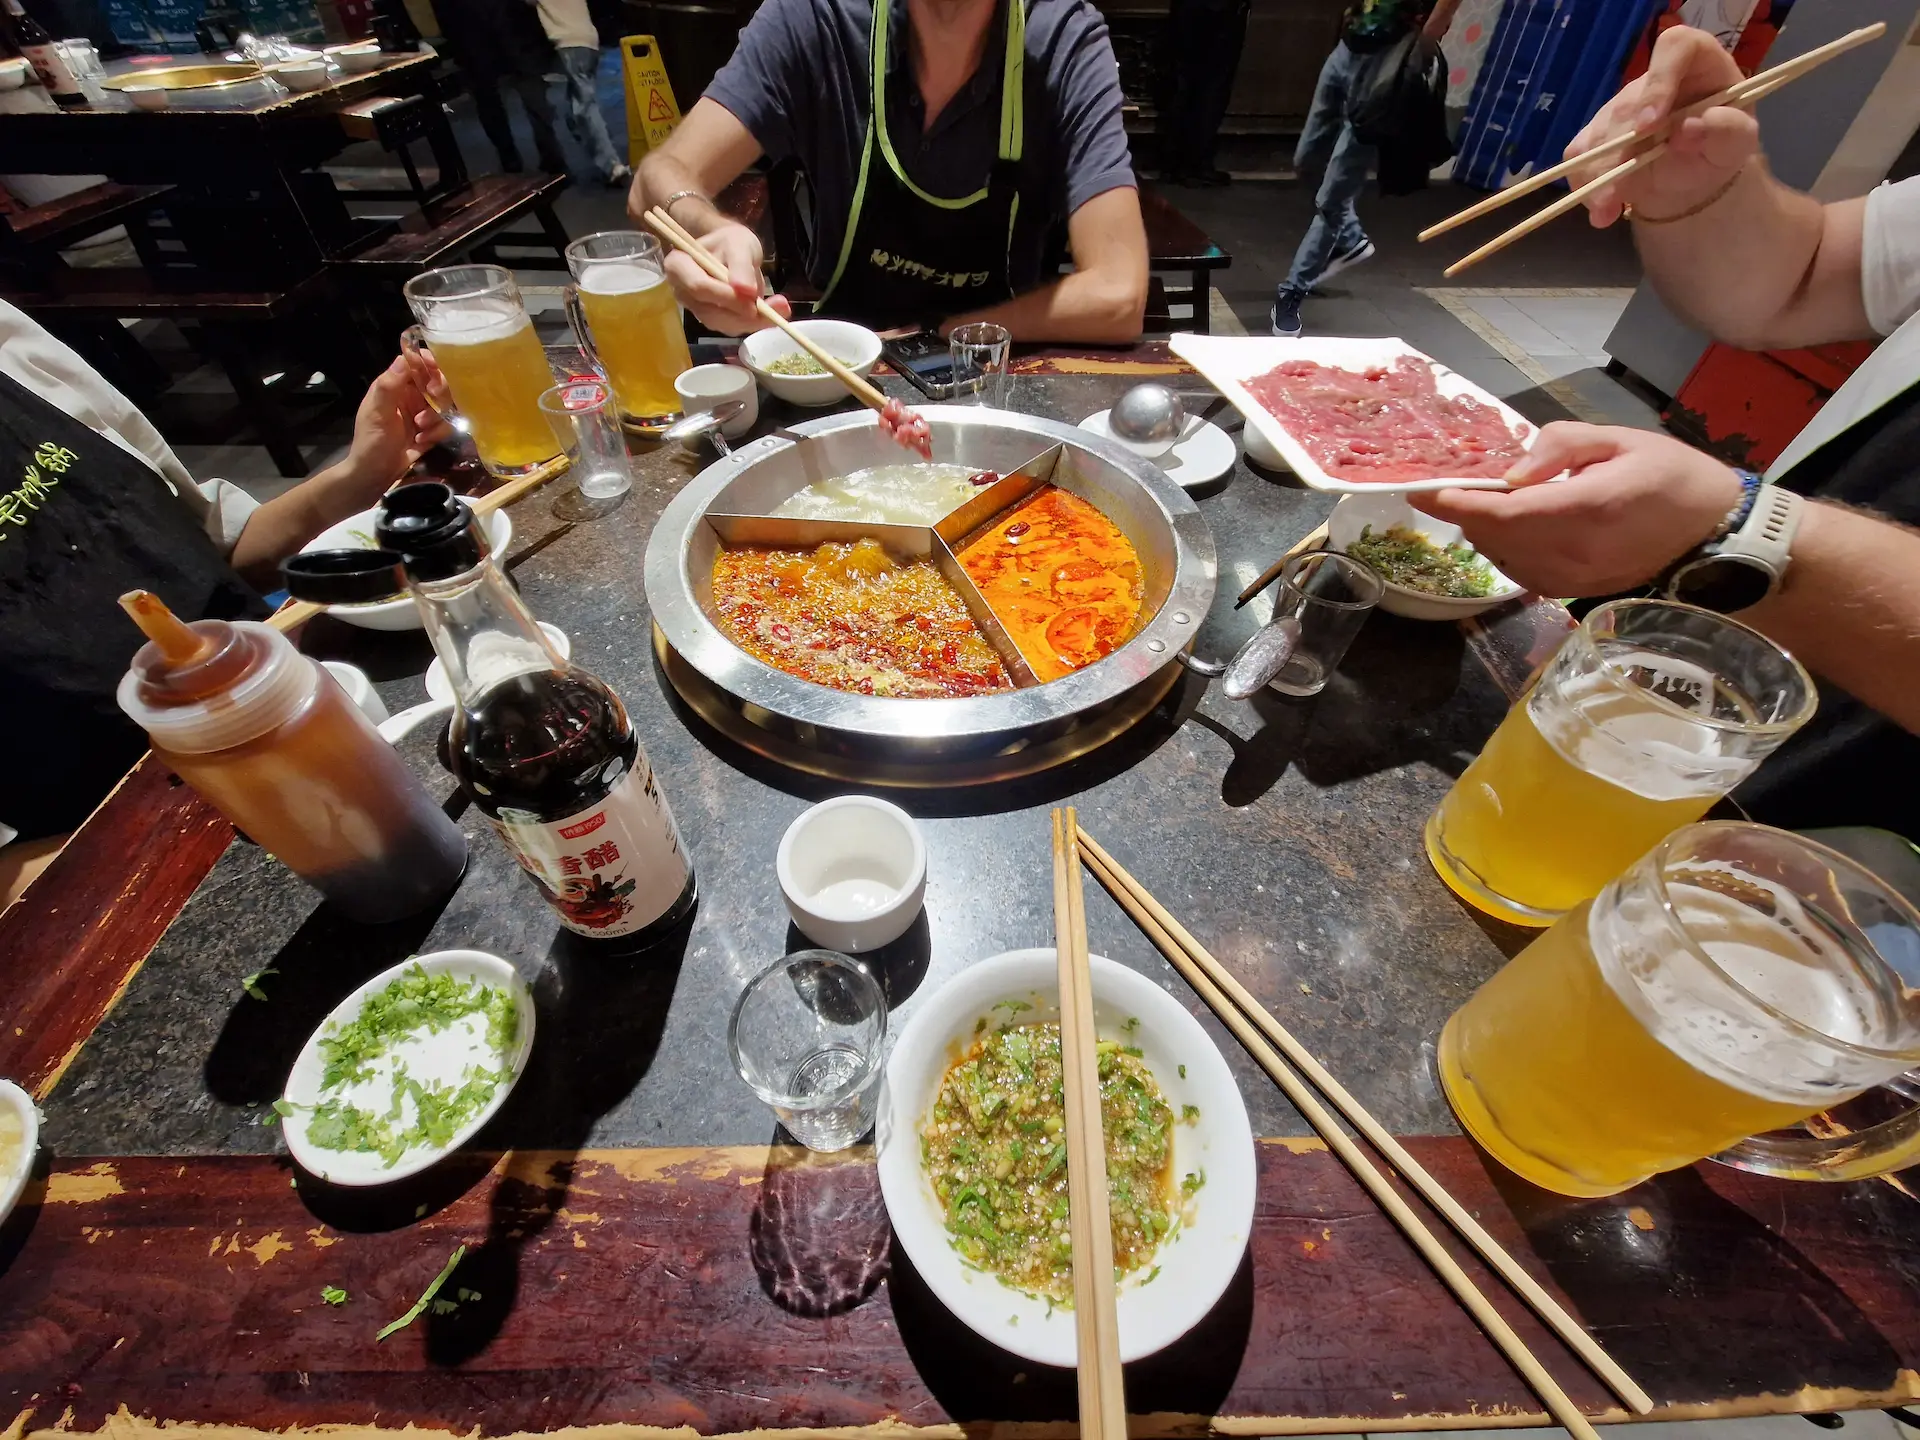 Au milieu de la table, le hotpot avec trois bouillons différents. On est quatre autour de la table, chacun avec sa grande bière fraîche. La personne sur la droite s'apprête à mettre à cuire des morceaux de viande.